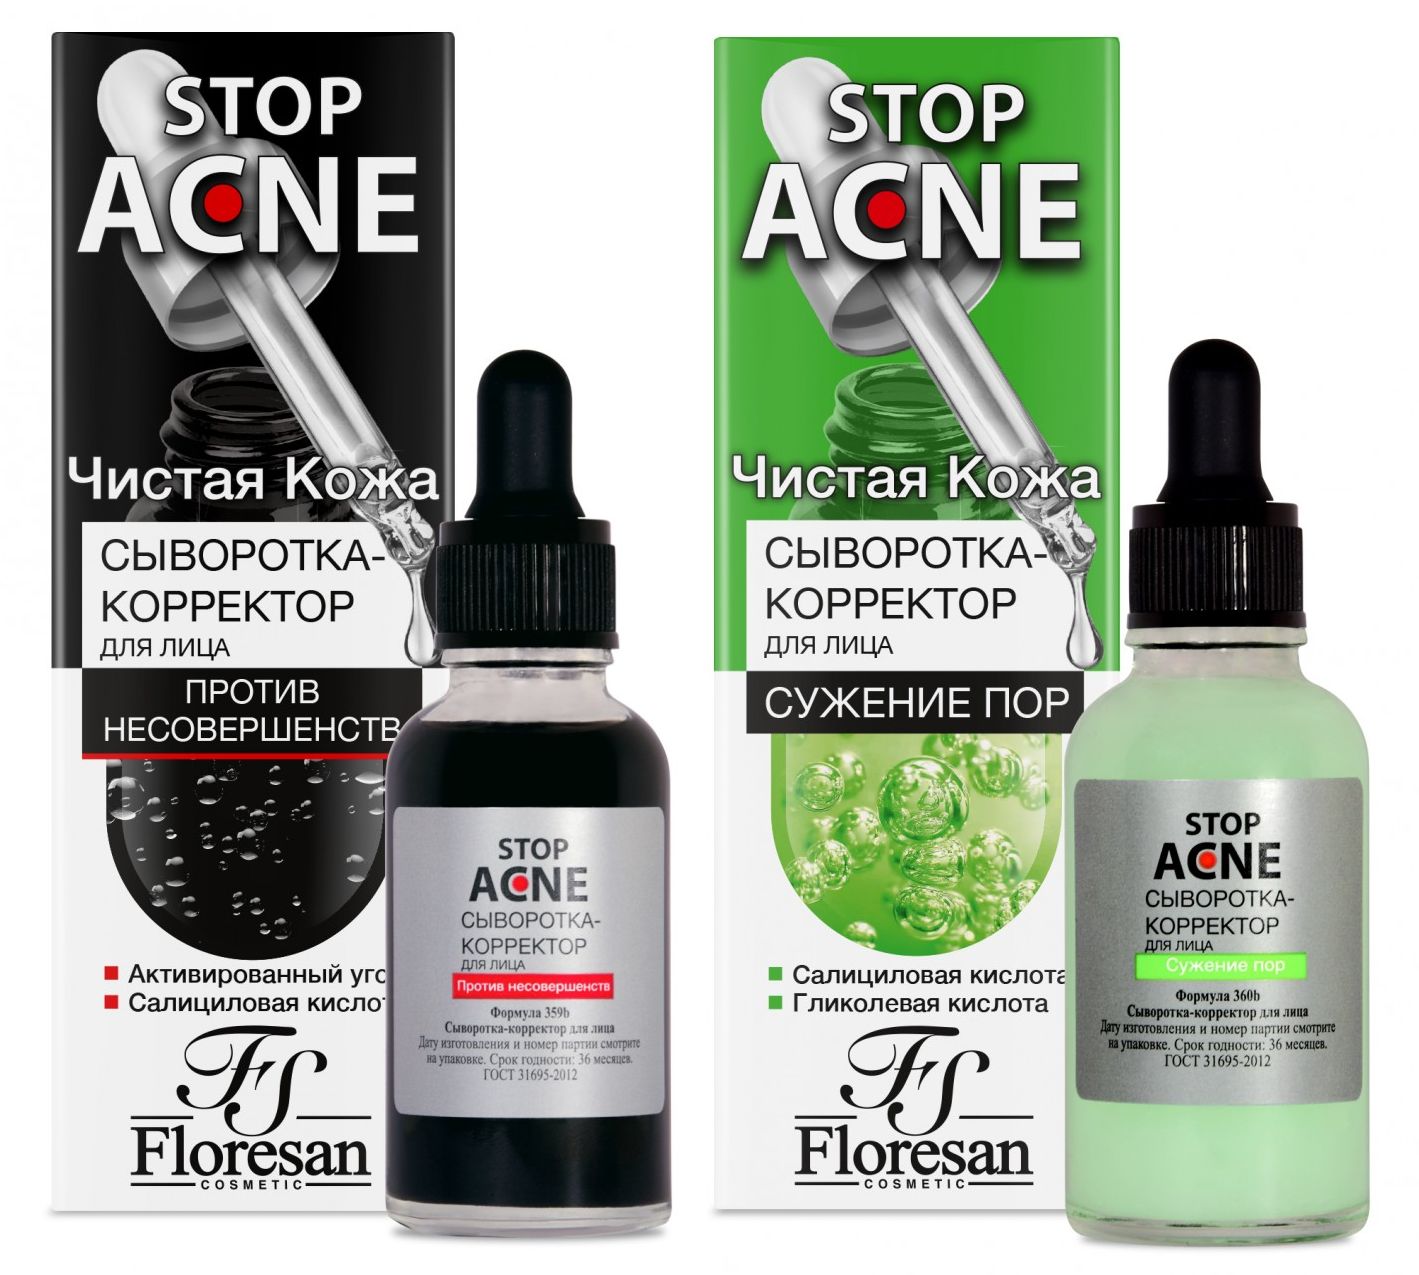 Набор Floresan Stop Acne сыворотка-корректор для лица против несовершенст 30 млх2 шт витэкс ampoule effect сыворотка корректор для лица против пигментации 30